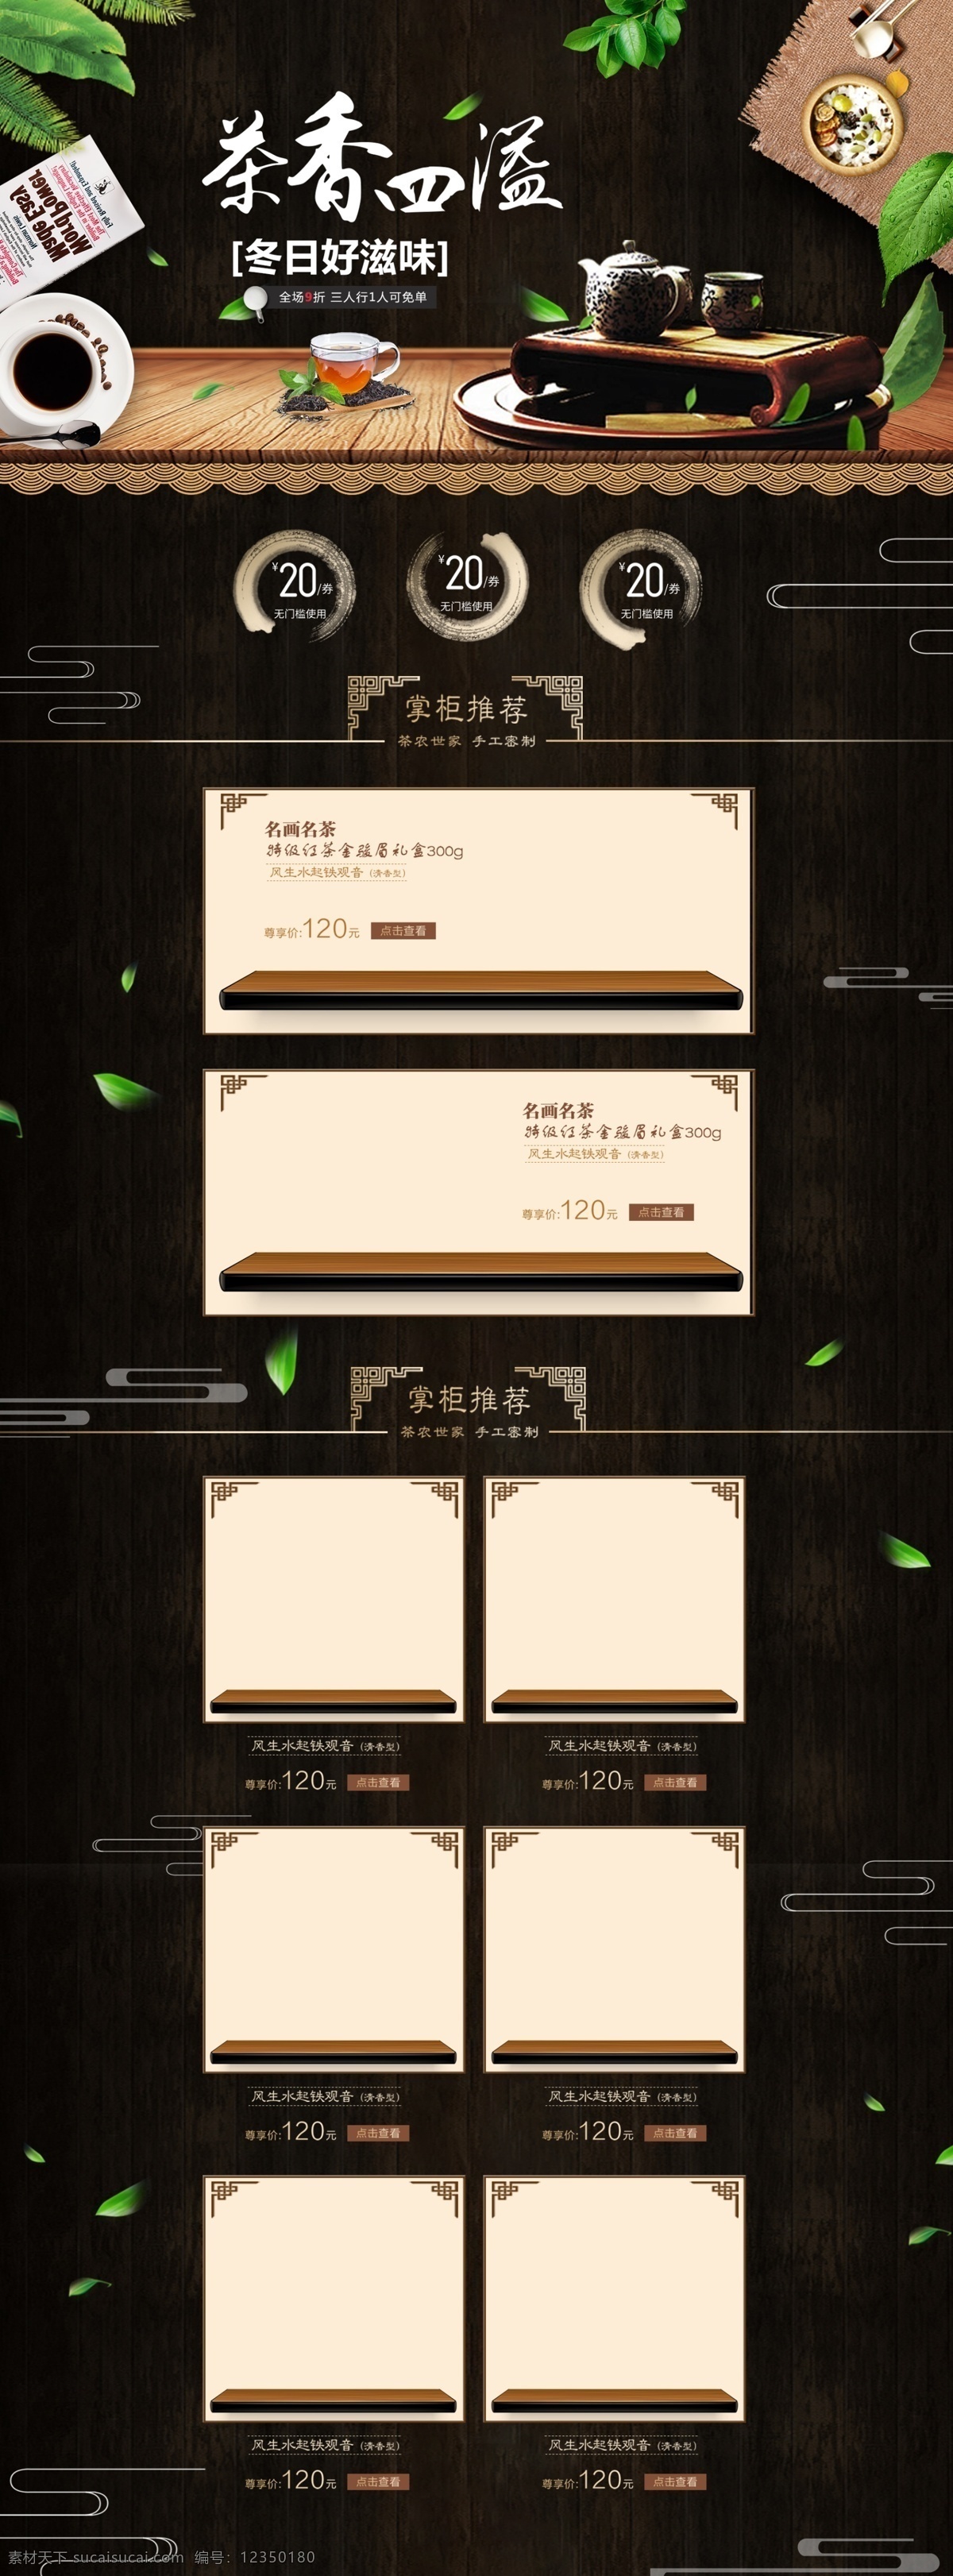 茶饮 食品 黑色 木板 简约 电商 淘宝 首页 模版 优惠券 茶叶 商品组 中国风